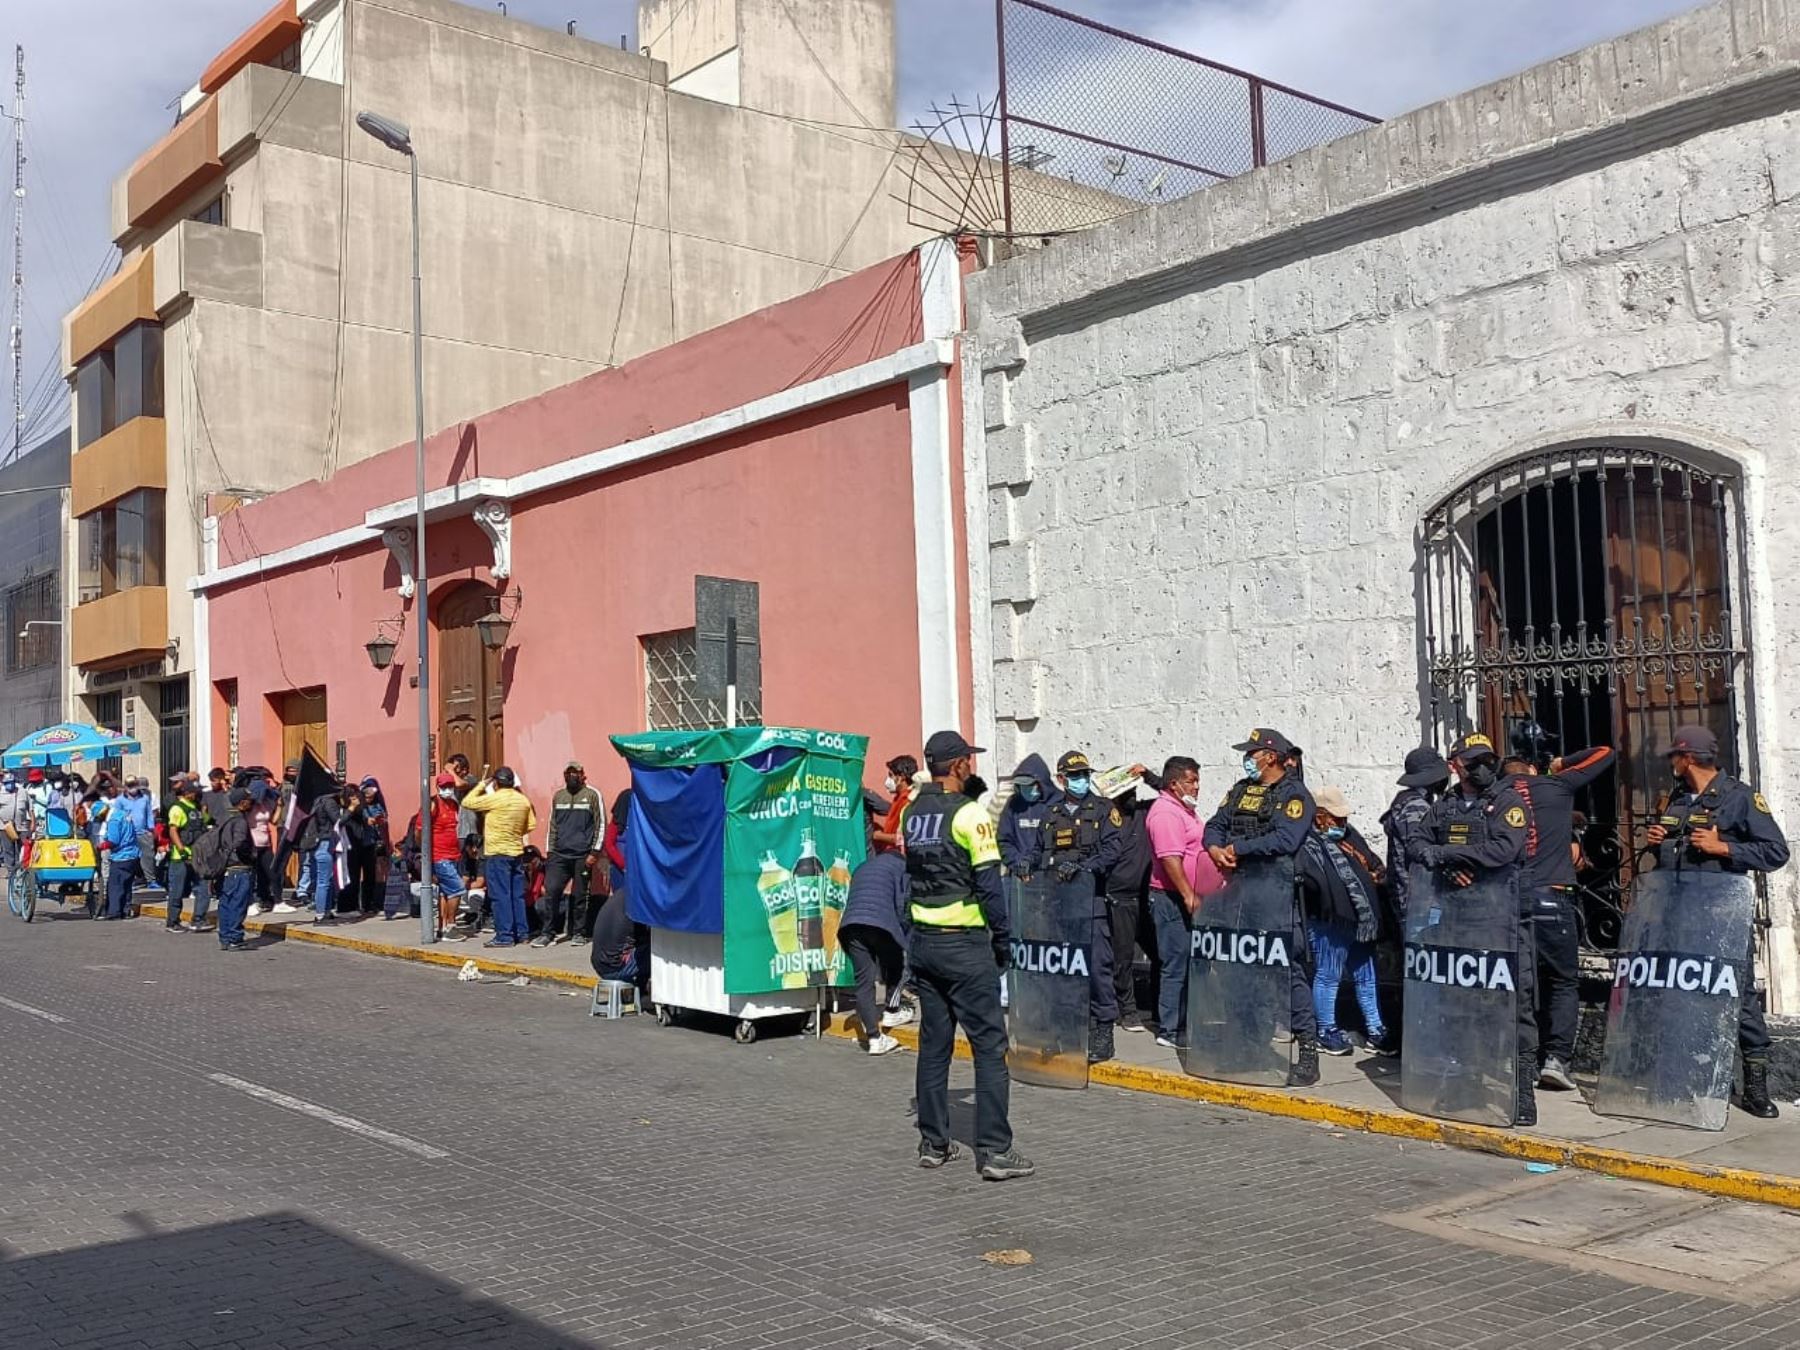 Gran expectativa ha generado en Arequipa el próximo partido de Melgar F.C. por la copa Sudamericana. Los hinchas forman largas colas para adquirir su entrada.